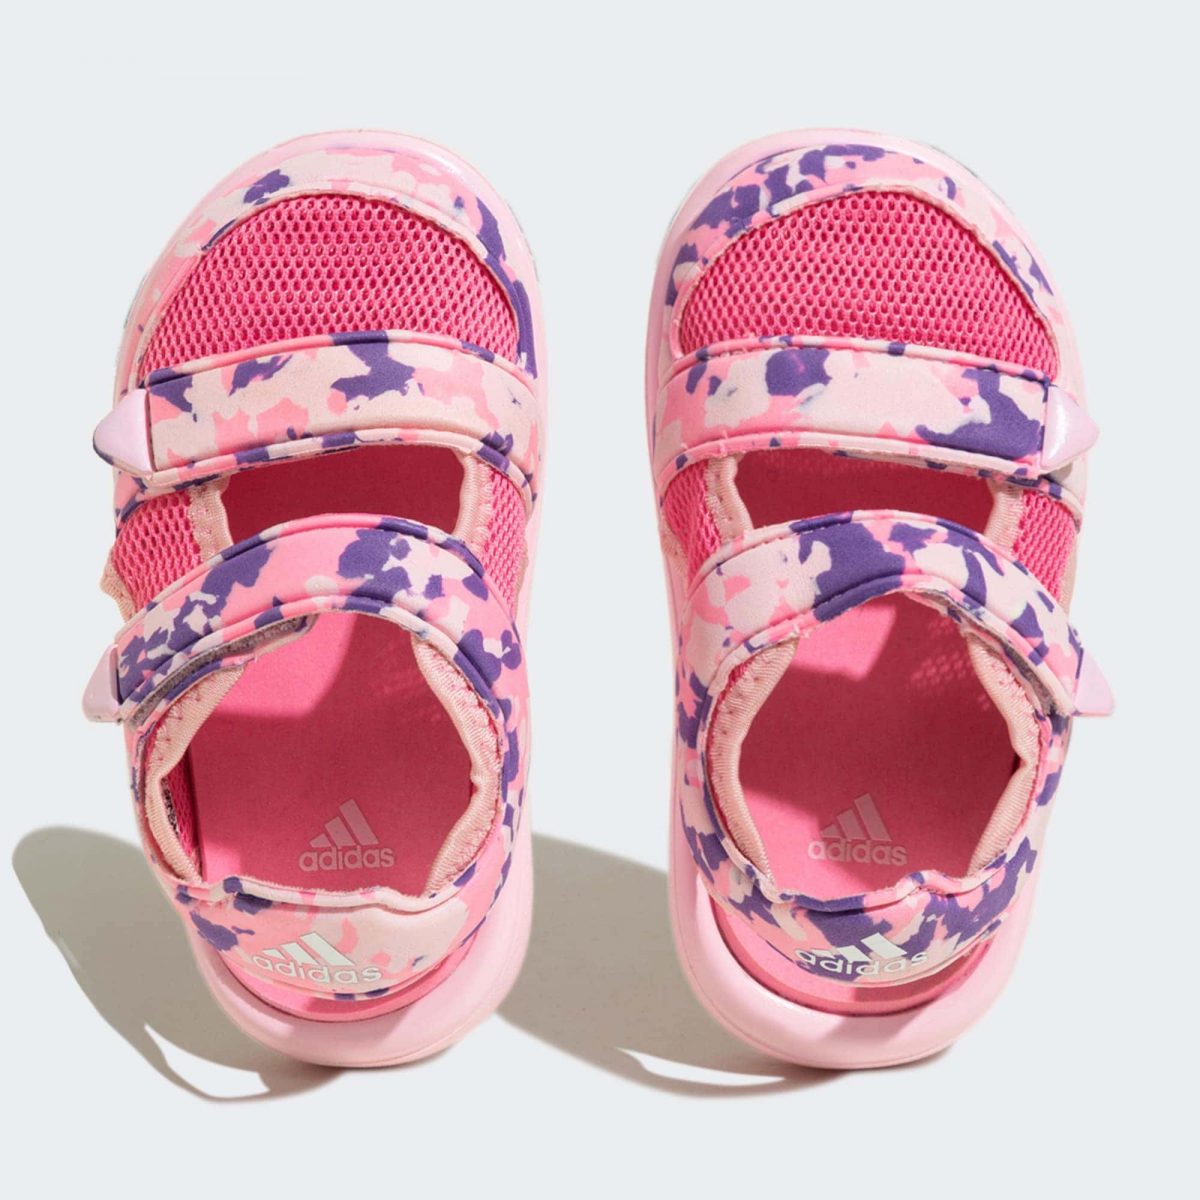 Детские сандалии adidas COMFORT SANDALS